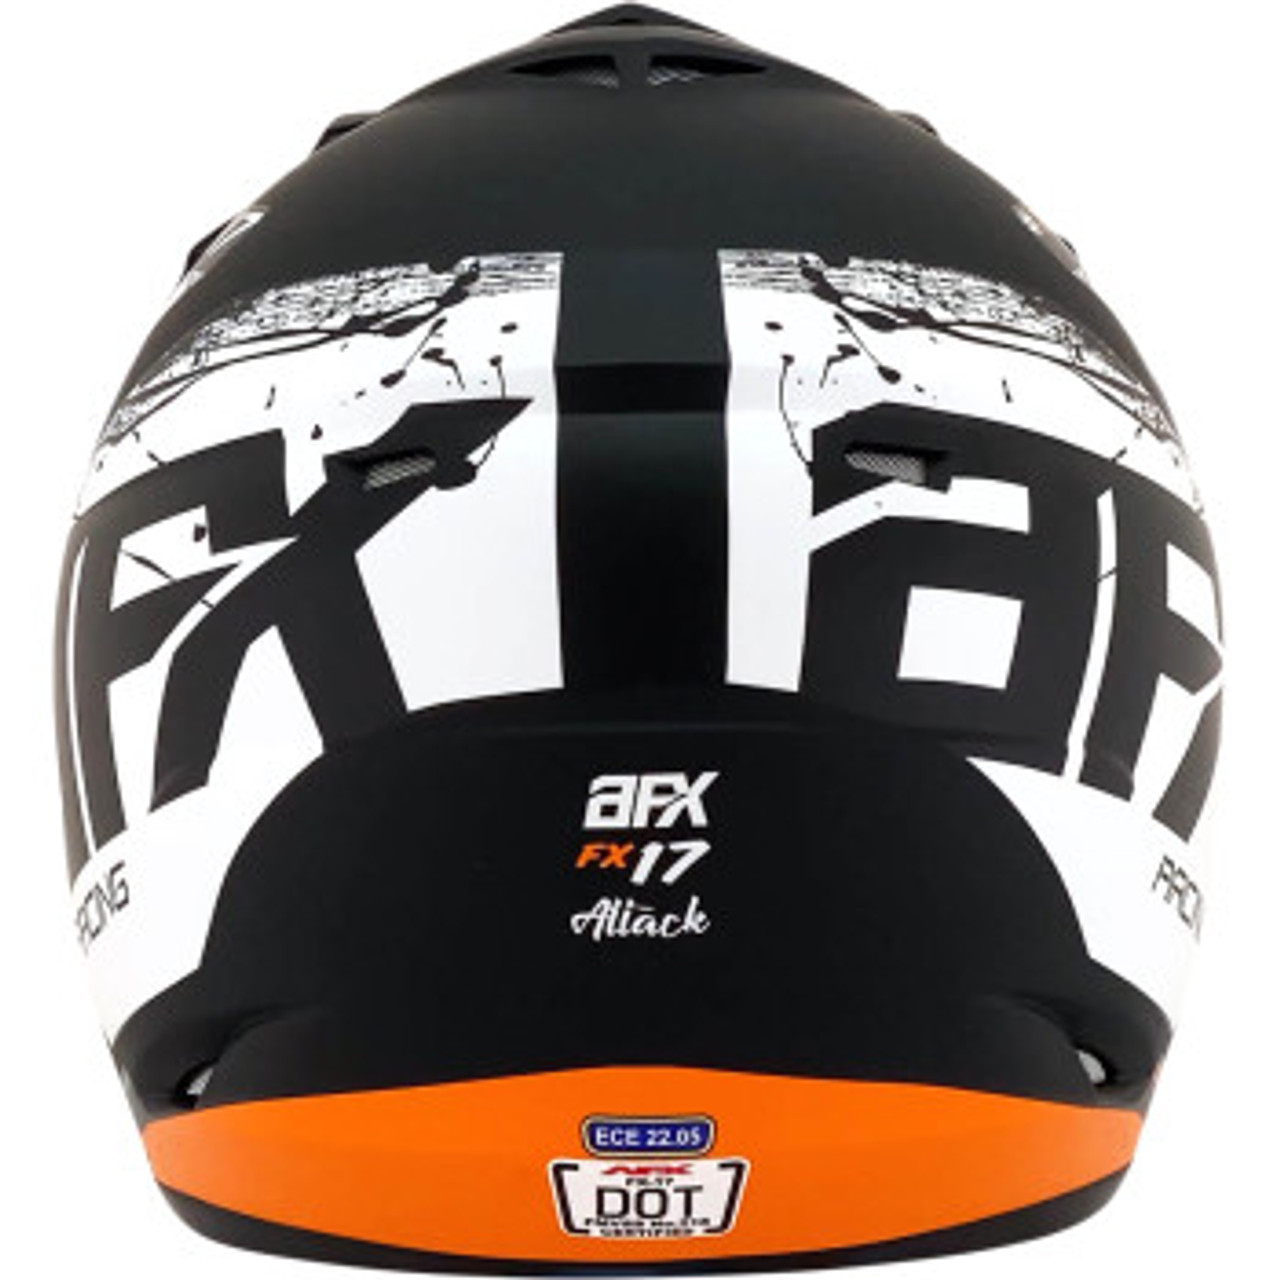 AFX  FX-17 Helmet - Matte Black/Orange